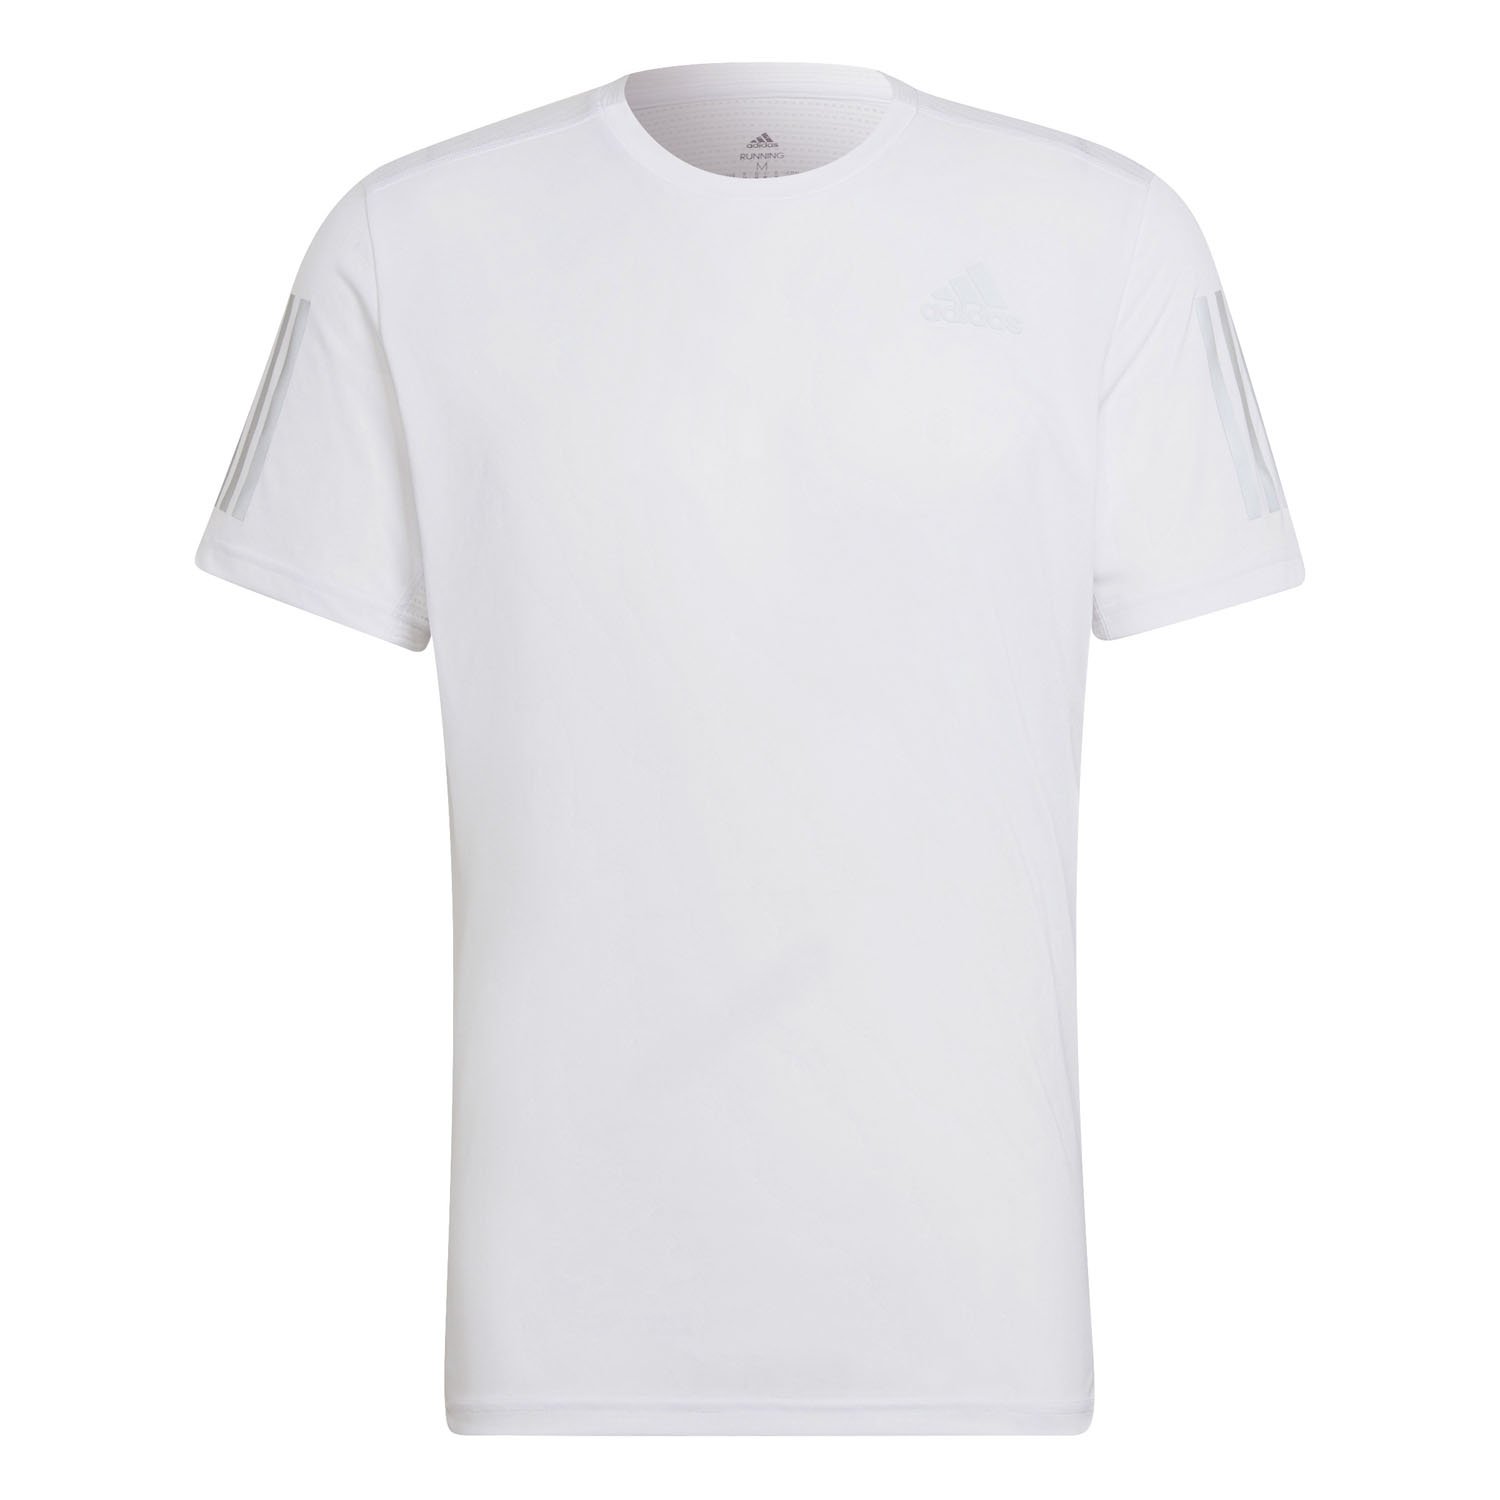 Adidas Own The Run Erkek Koşu Tişörtü - Beyaz - 1